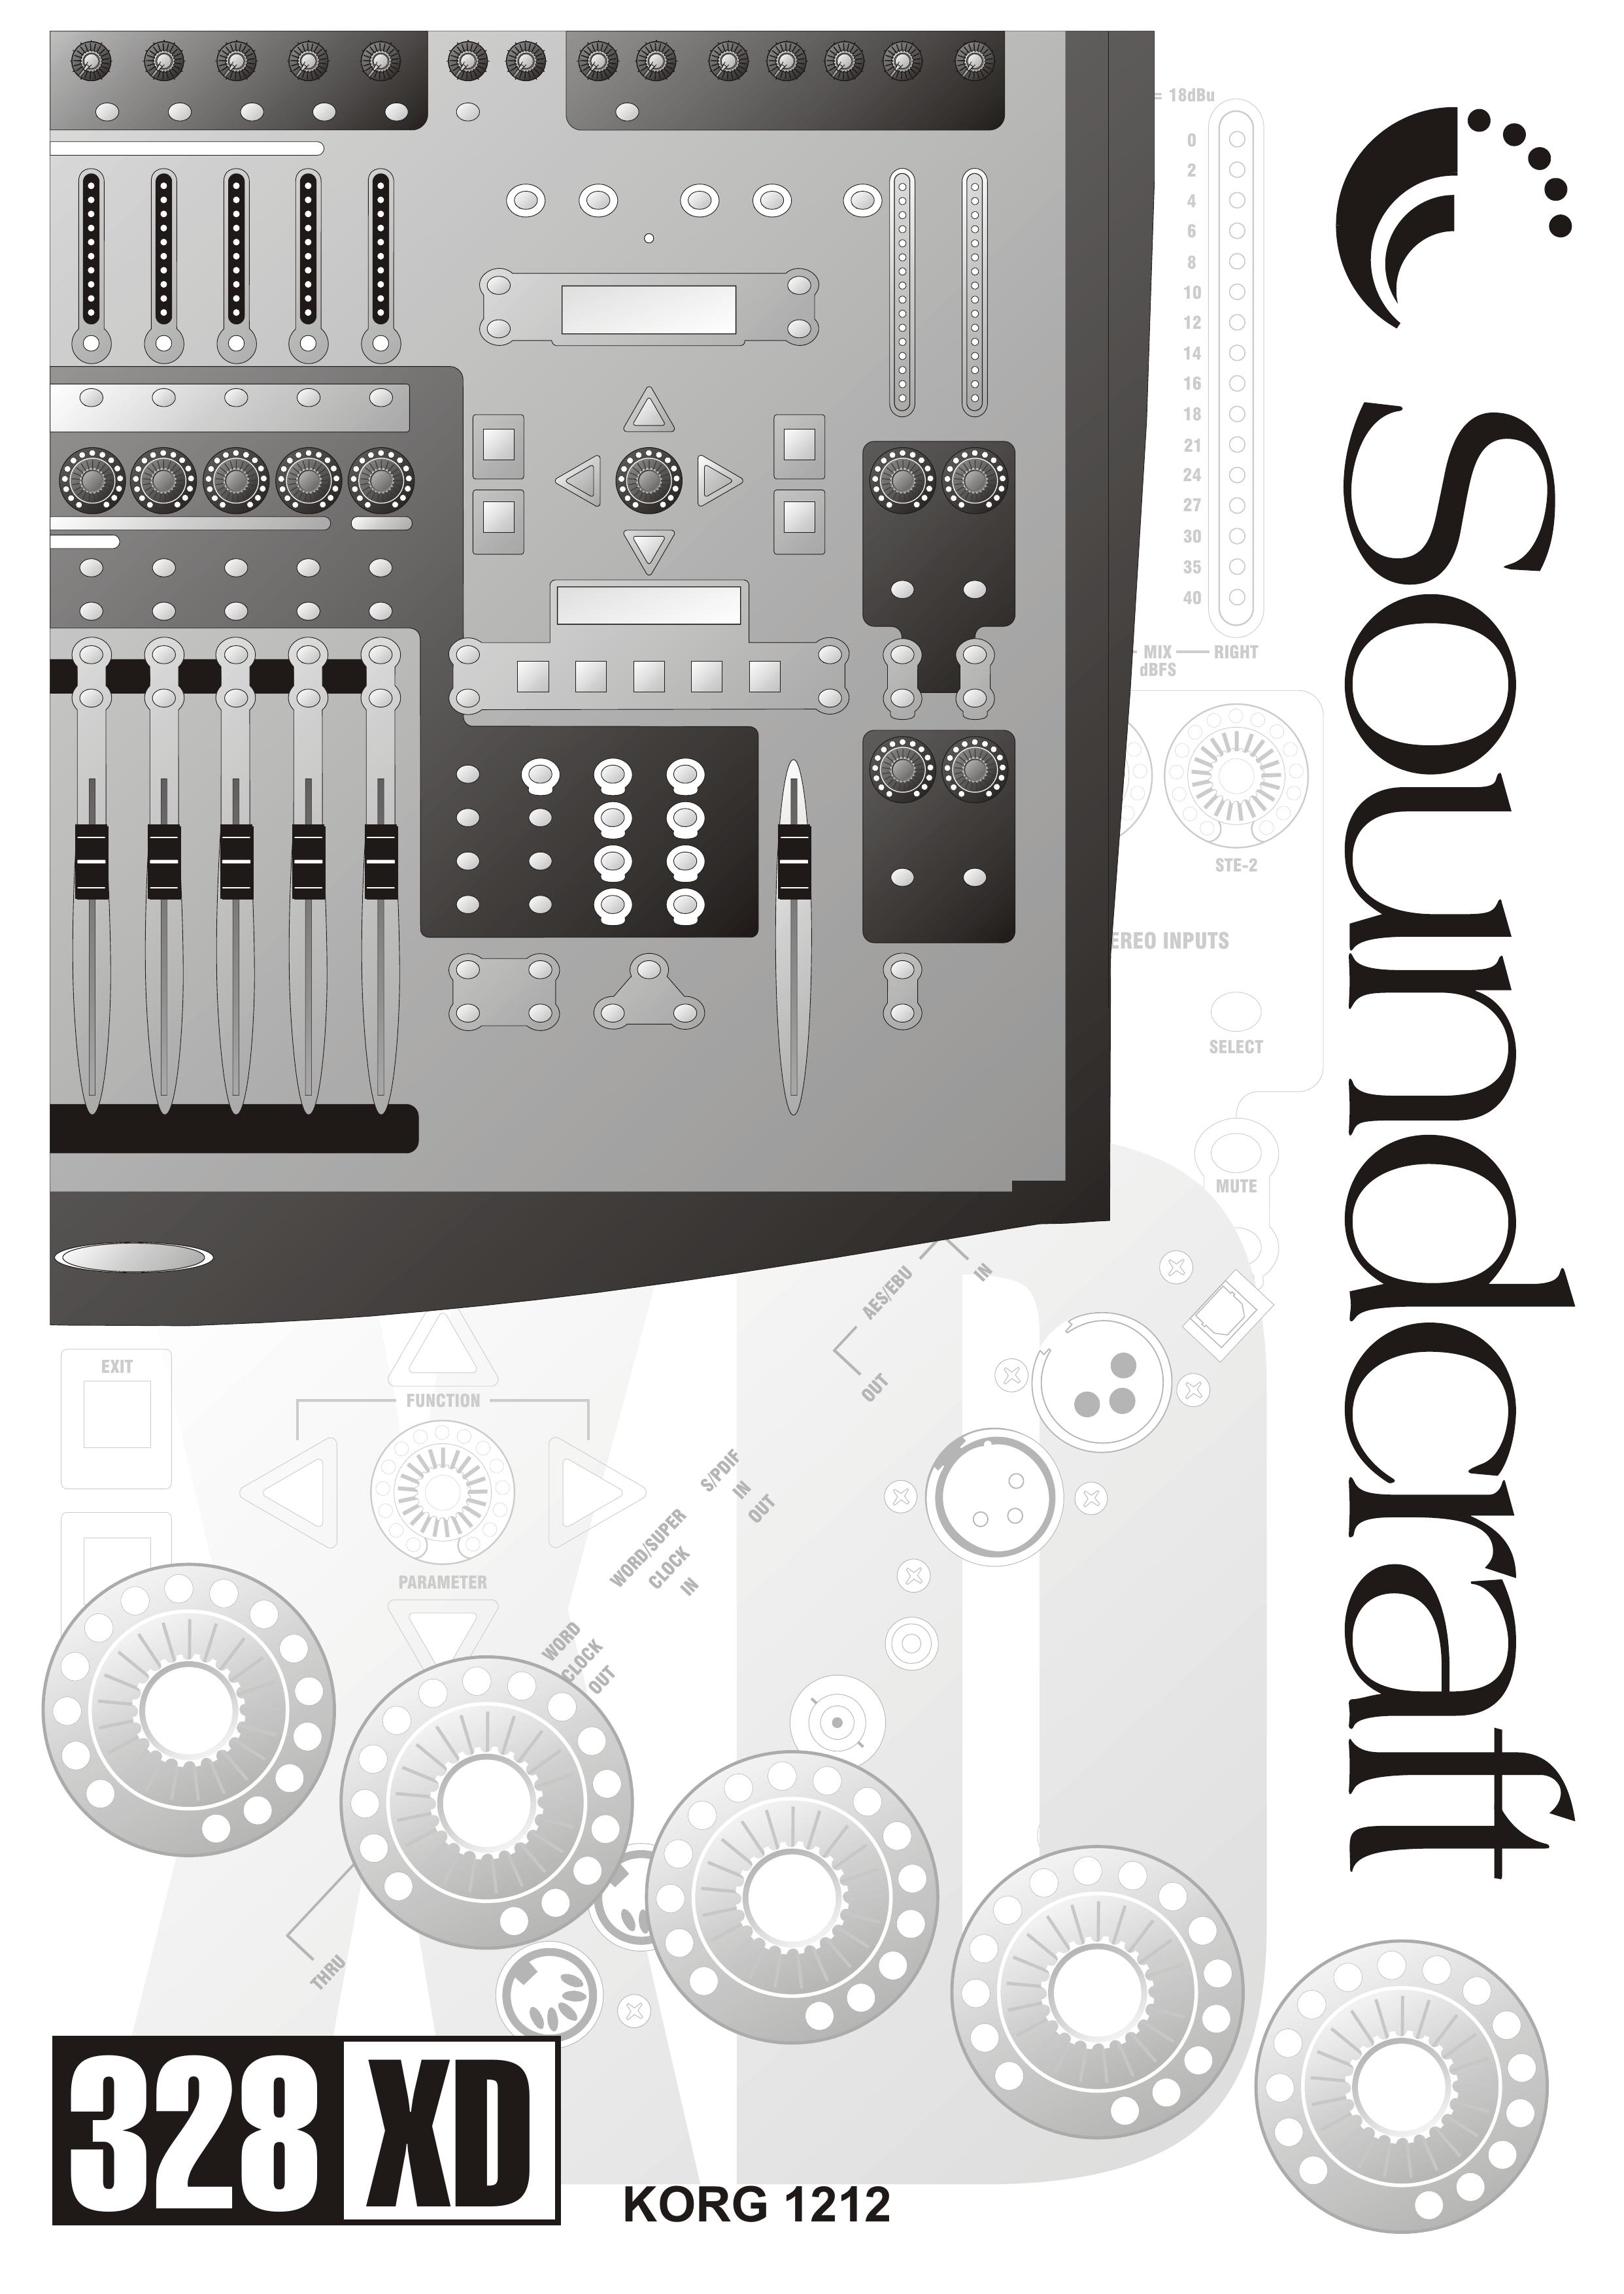 SoundCraft 328 XD Music Mixer User Manual